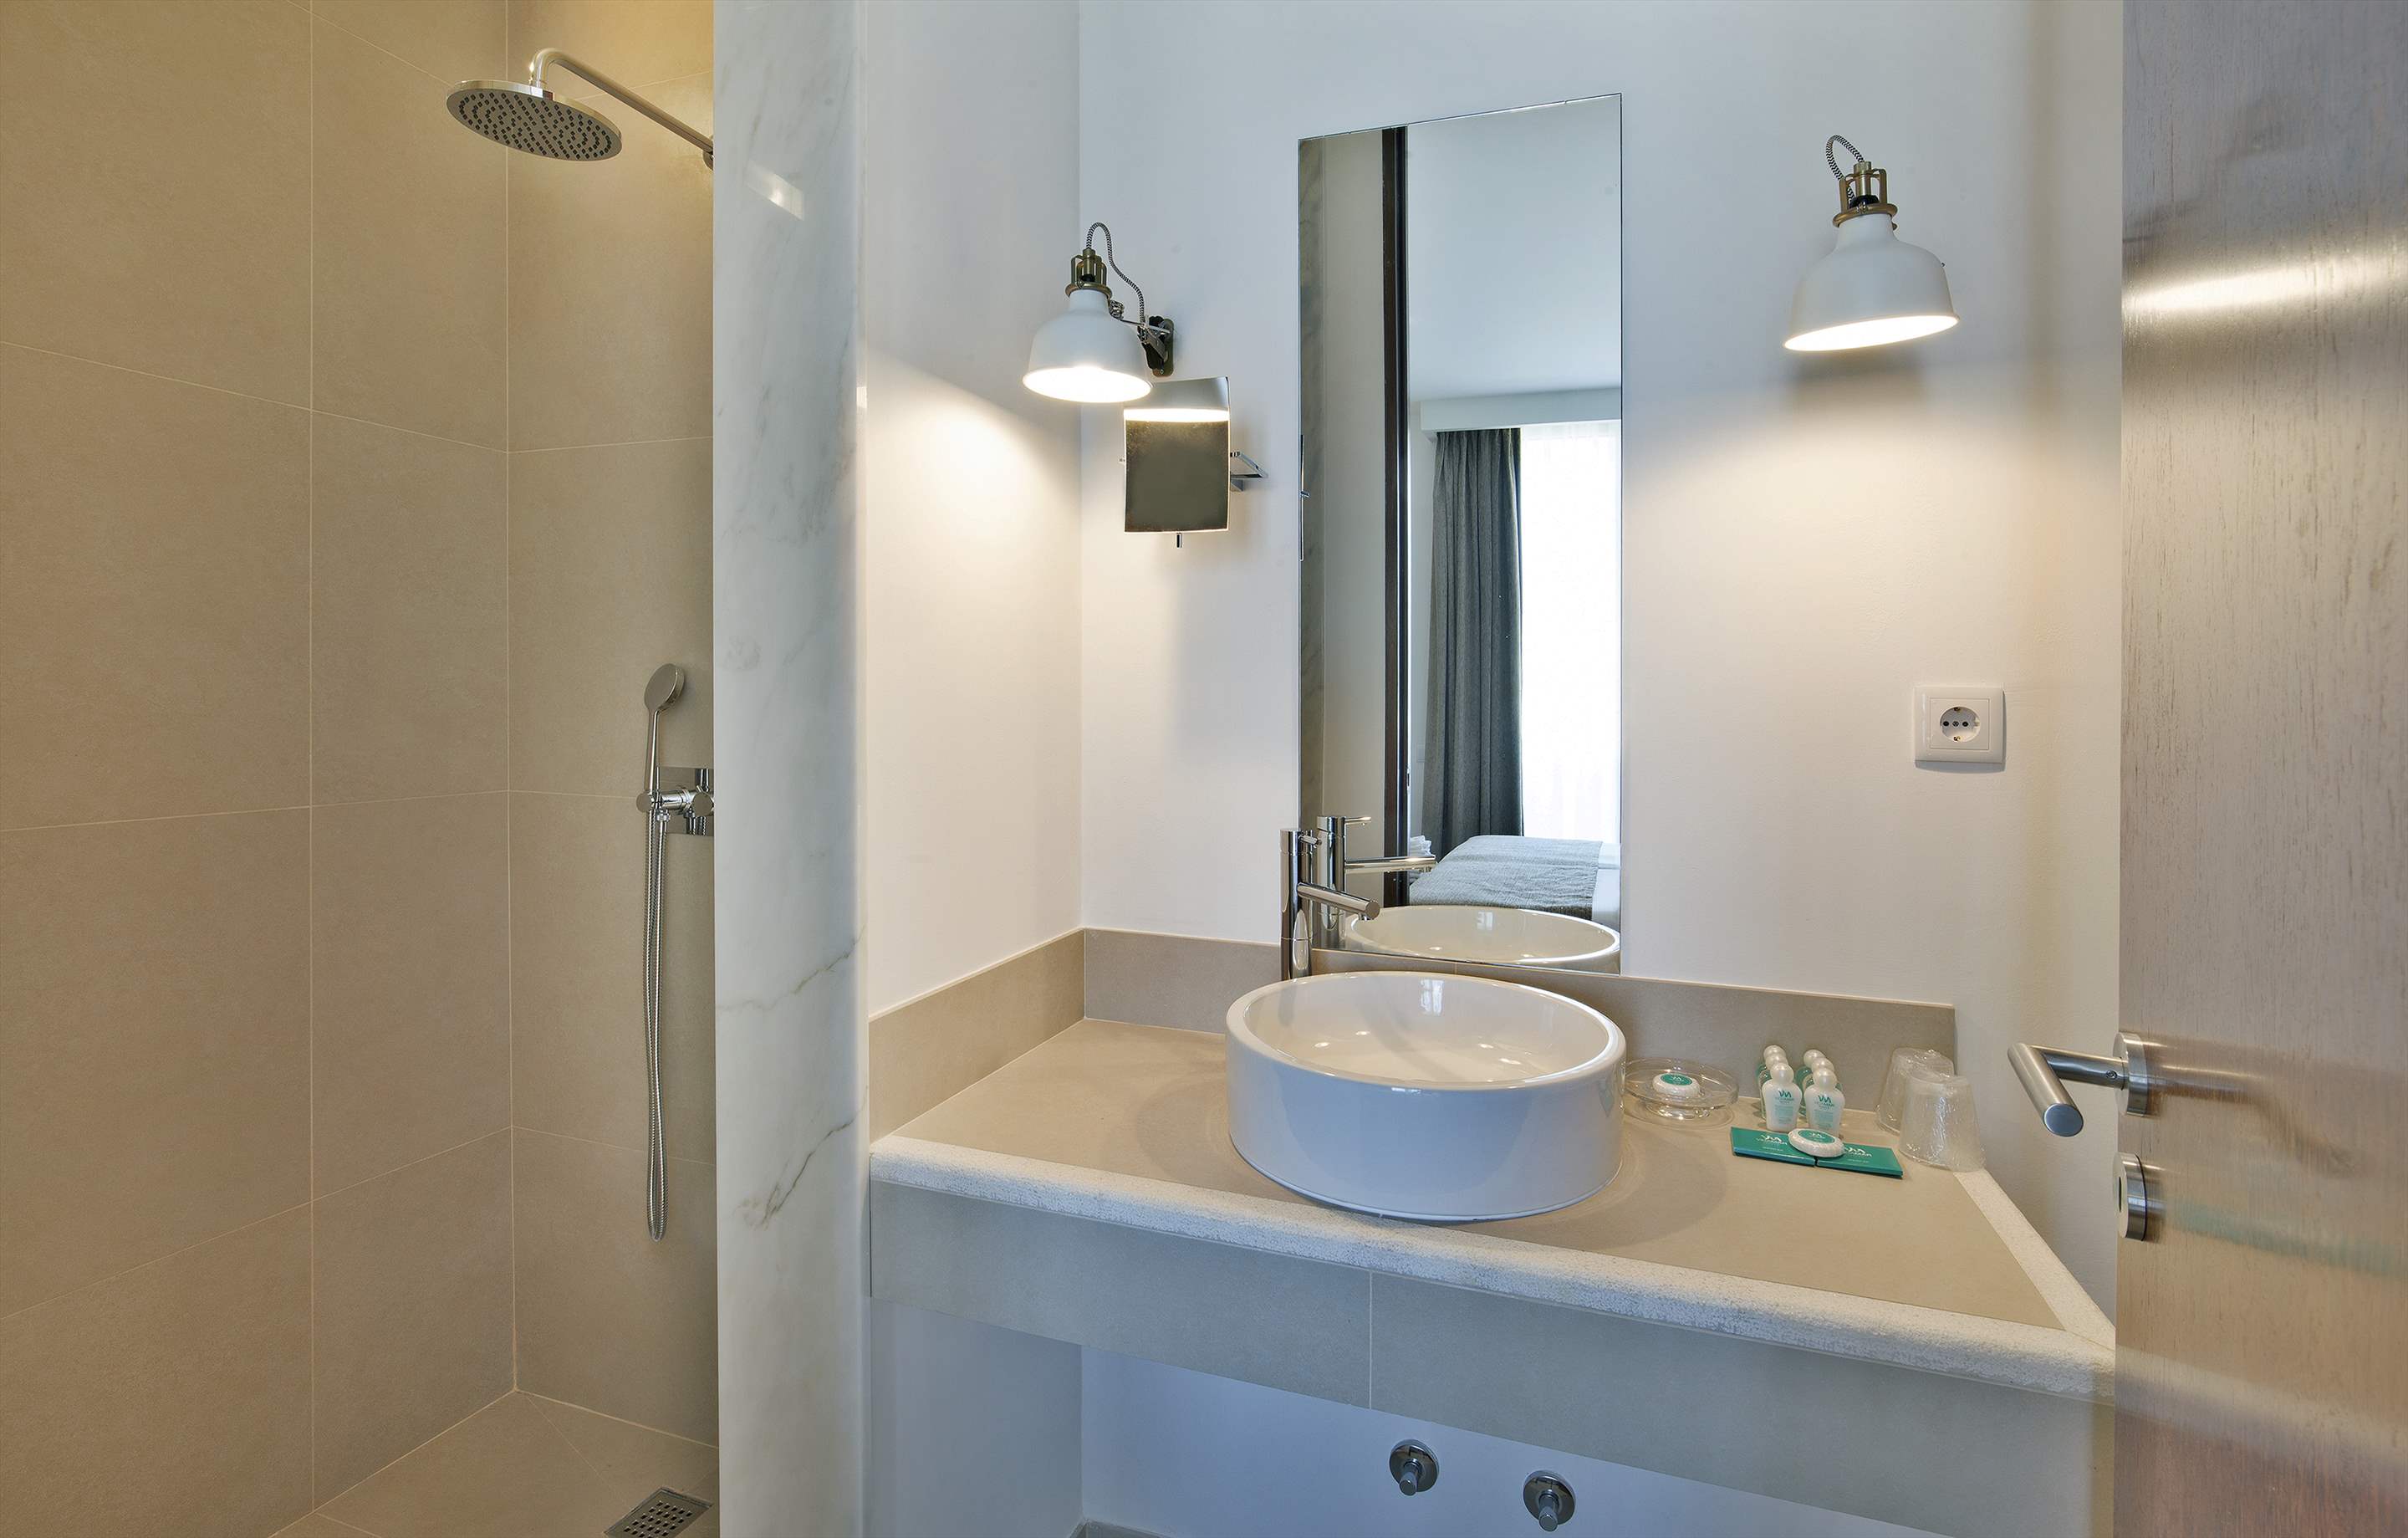 Sao Rafael 2 Bed Premium Villa with Private Pool, 2 bedroom villa in Albufeira Area, Algarve Photo #11